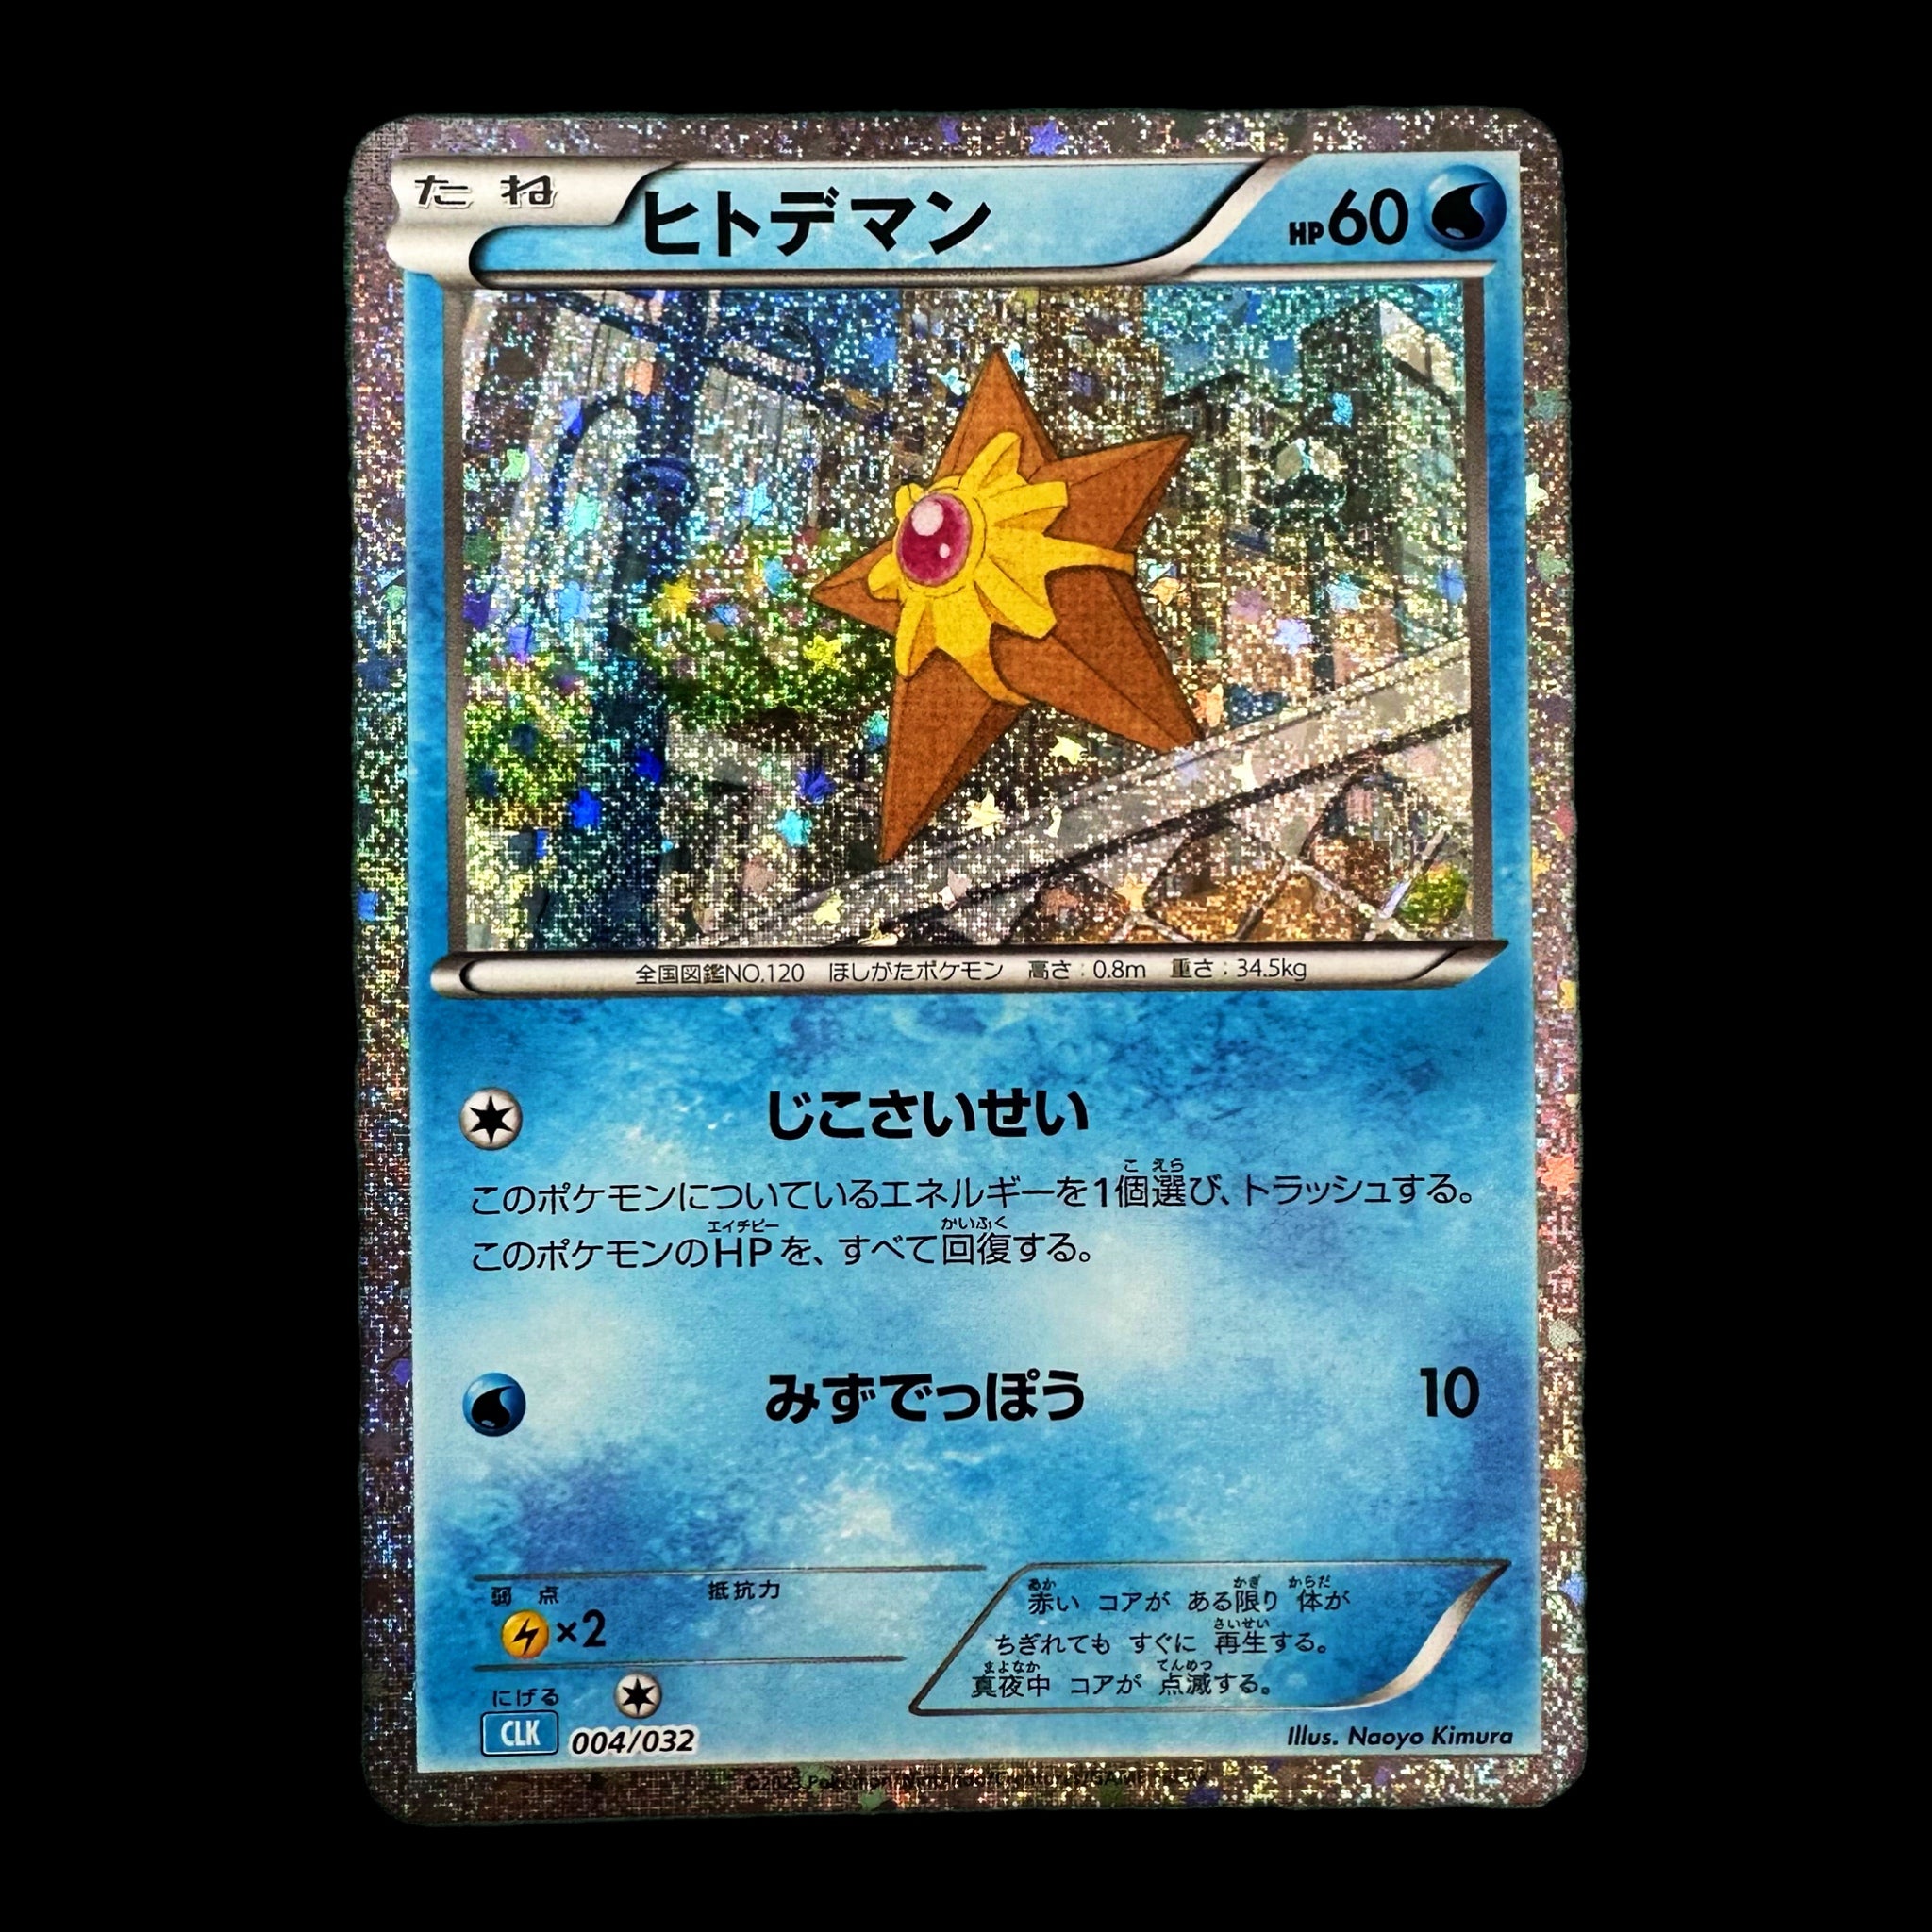 Pokémon Card Game Scarlet & Violet ｢Pokémon Card Game Classic｣  Pokémon Card Game CLK 004/032  Staryu